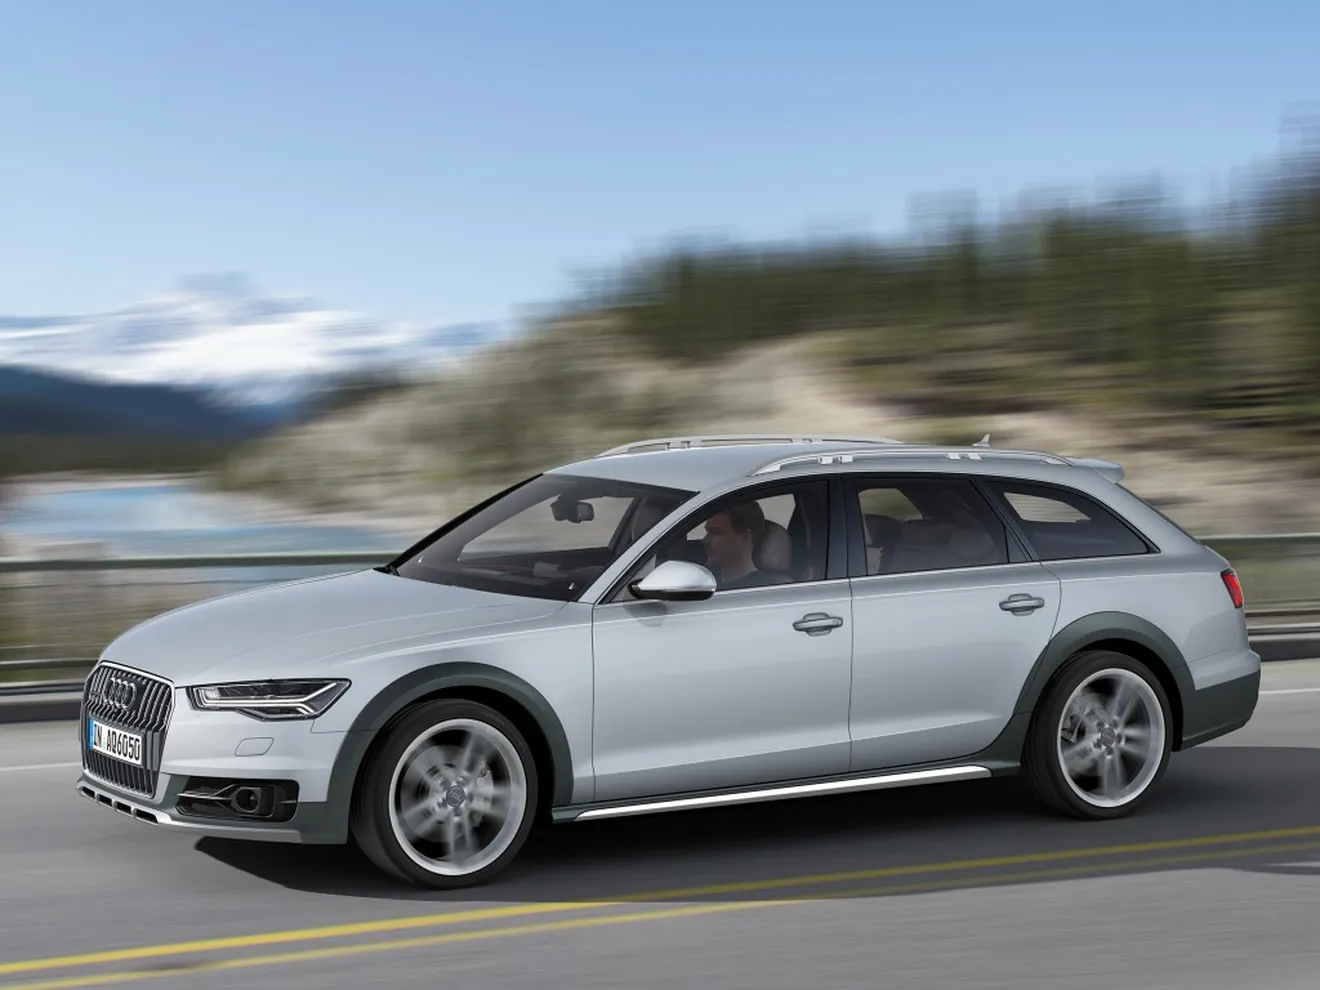 Suecia - Octubre 2016: El Audi A6 entra en el Top 10